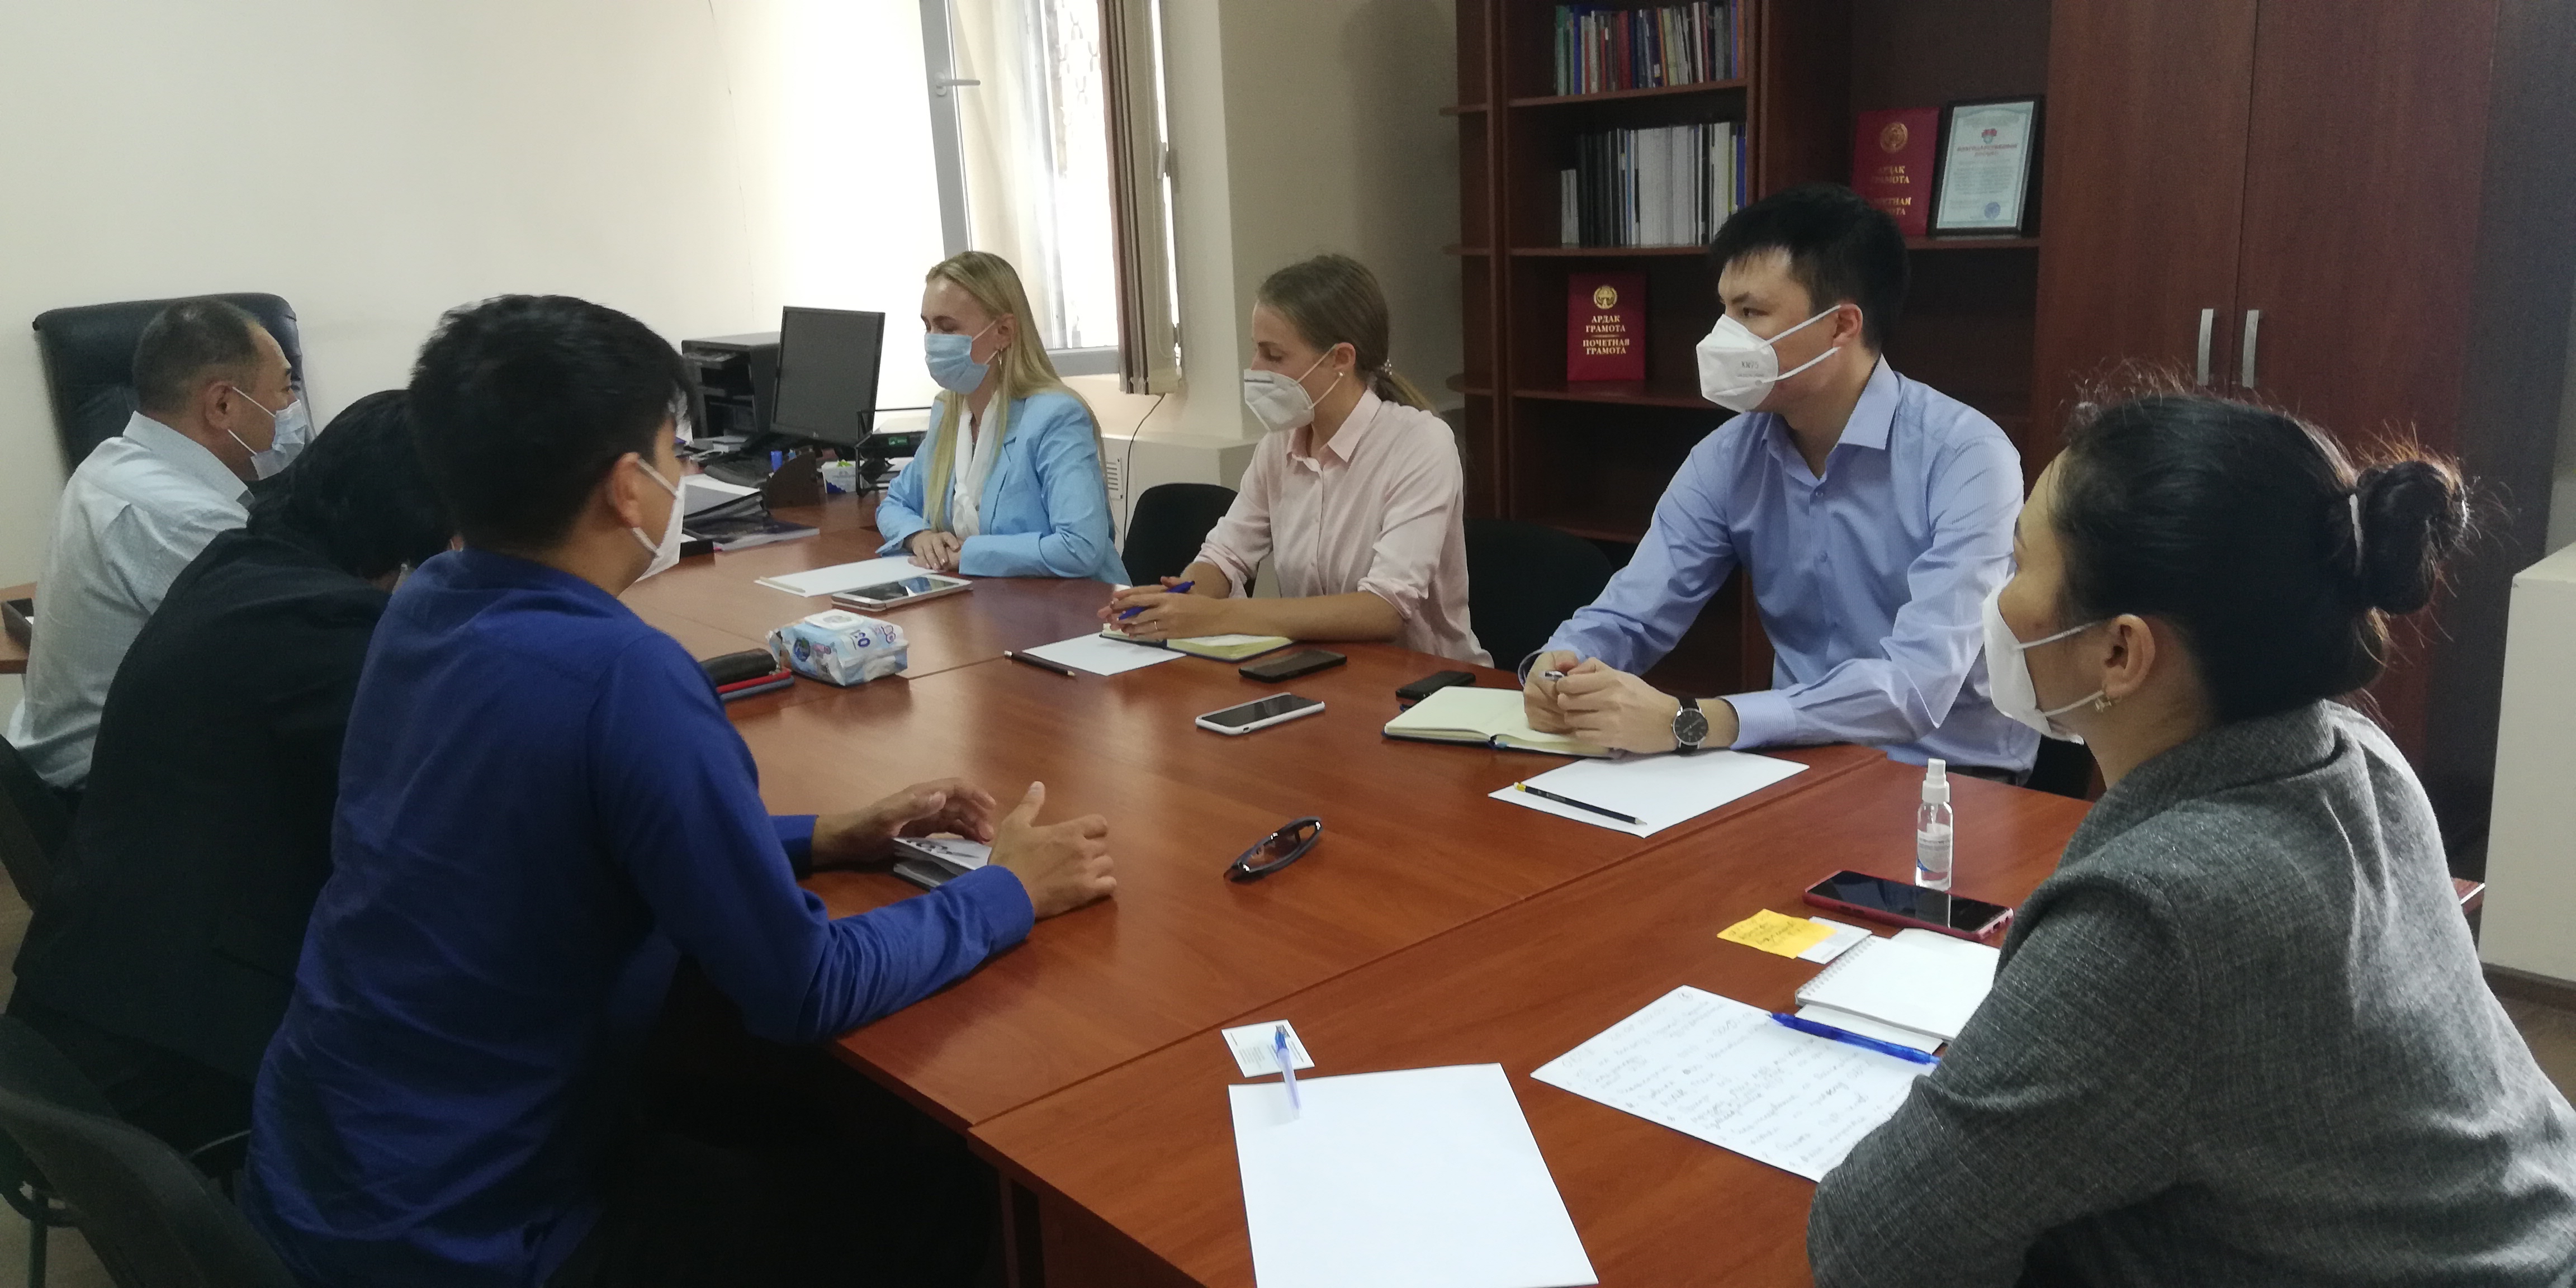 (Рус) Состоялась встреча руководителей Национального центра с представителями Программного офиса ОБСЕ в Бишкеке.